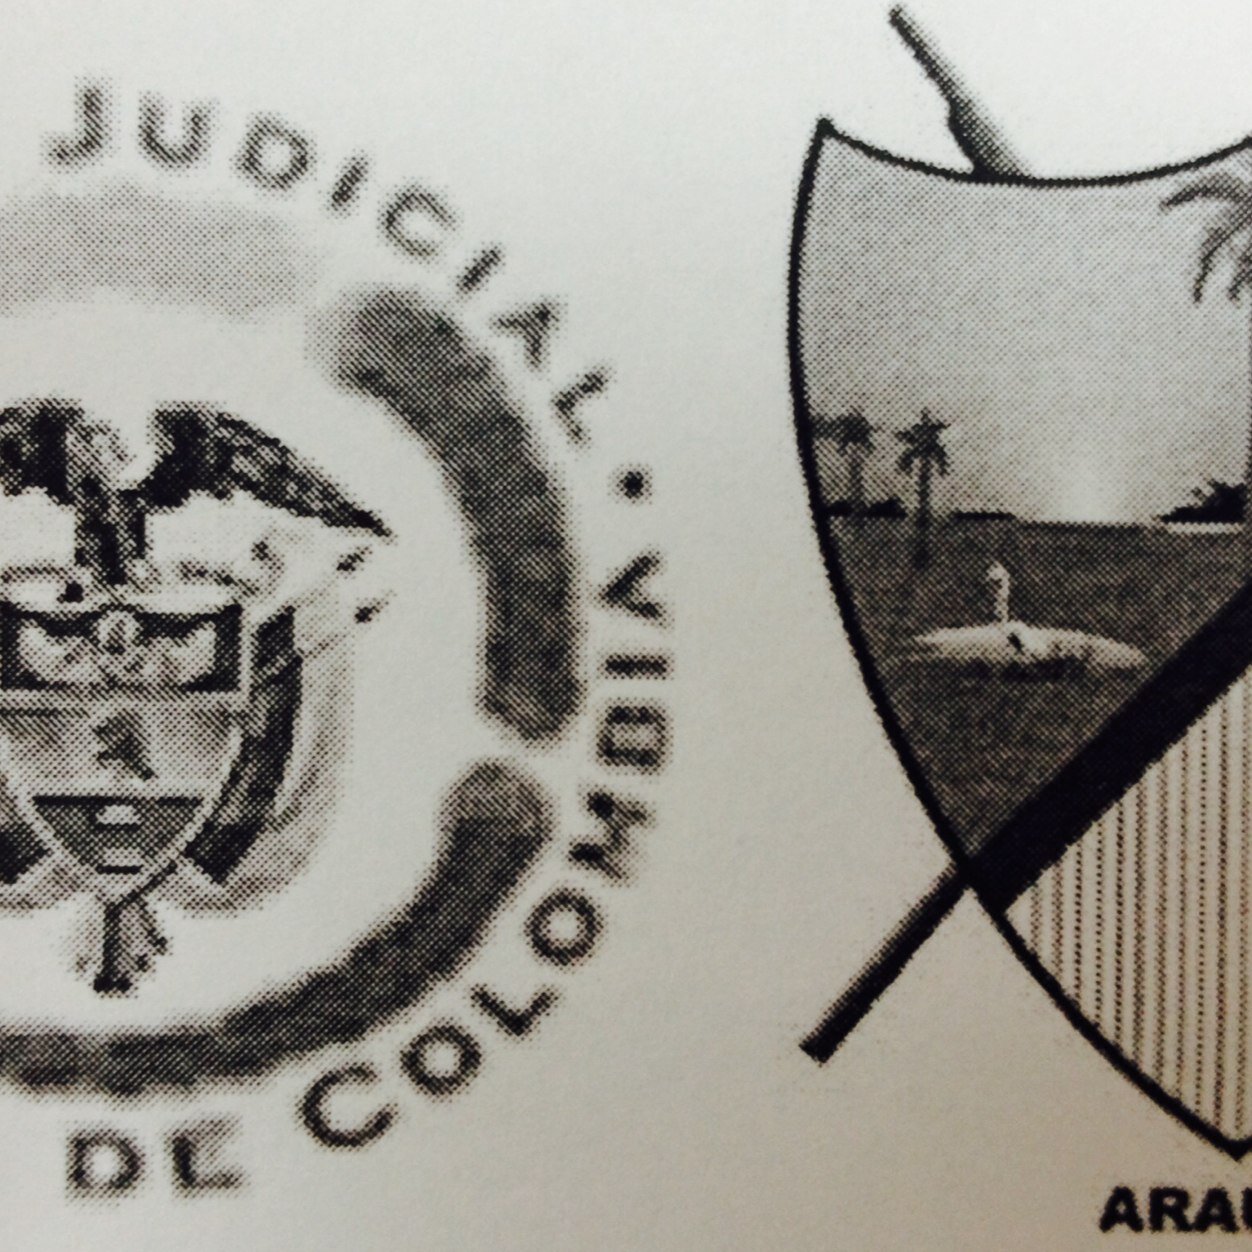 Tribunal Adtvo de Arauca, Desp. 02. Magistrado: Luis Norberto Cermeño. Abog. Asesor : Yurany León. Aux. Judicial: Norma Nathaly Rodríguez